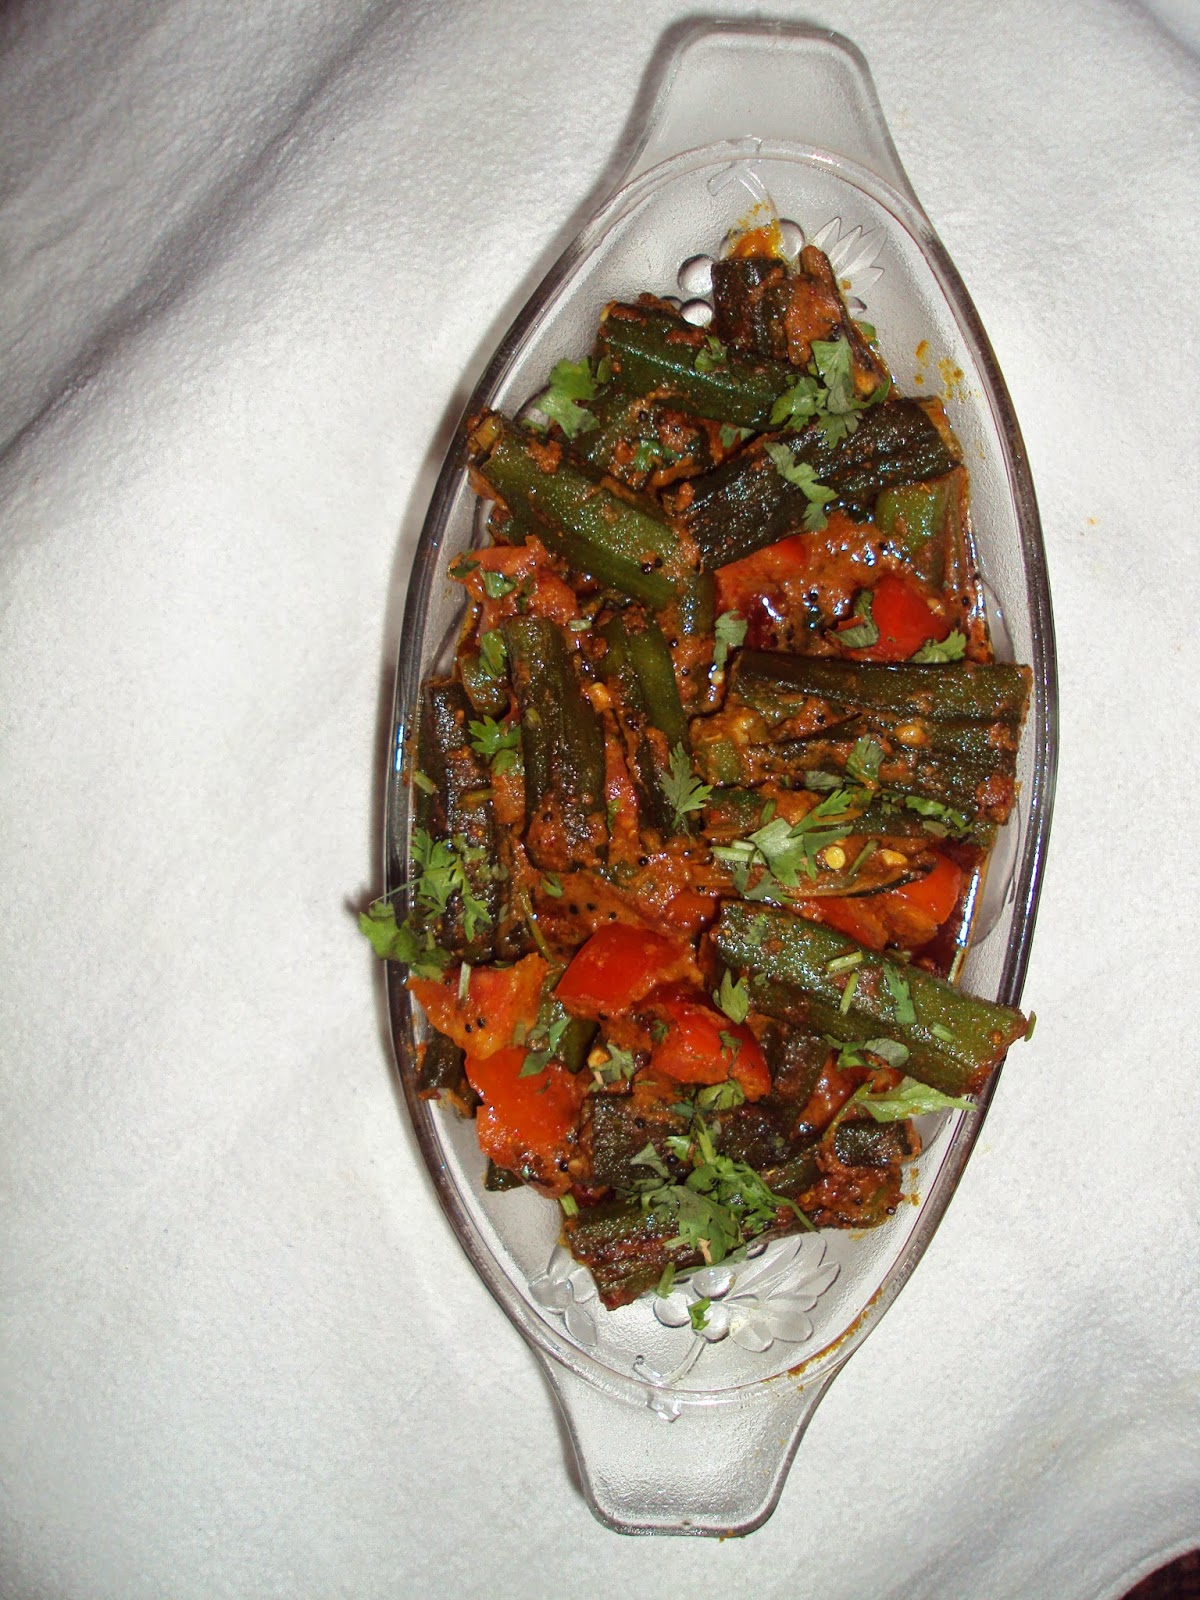 Recipe of Bharva Bhindi | How to Make Bhindi Masala - VegRecipeWorld